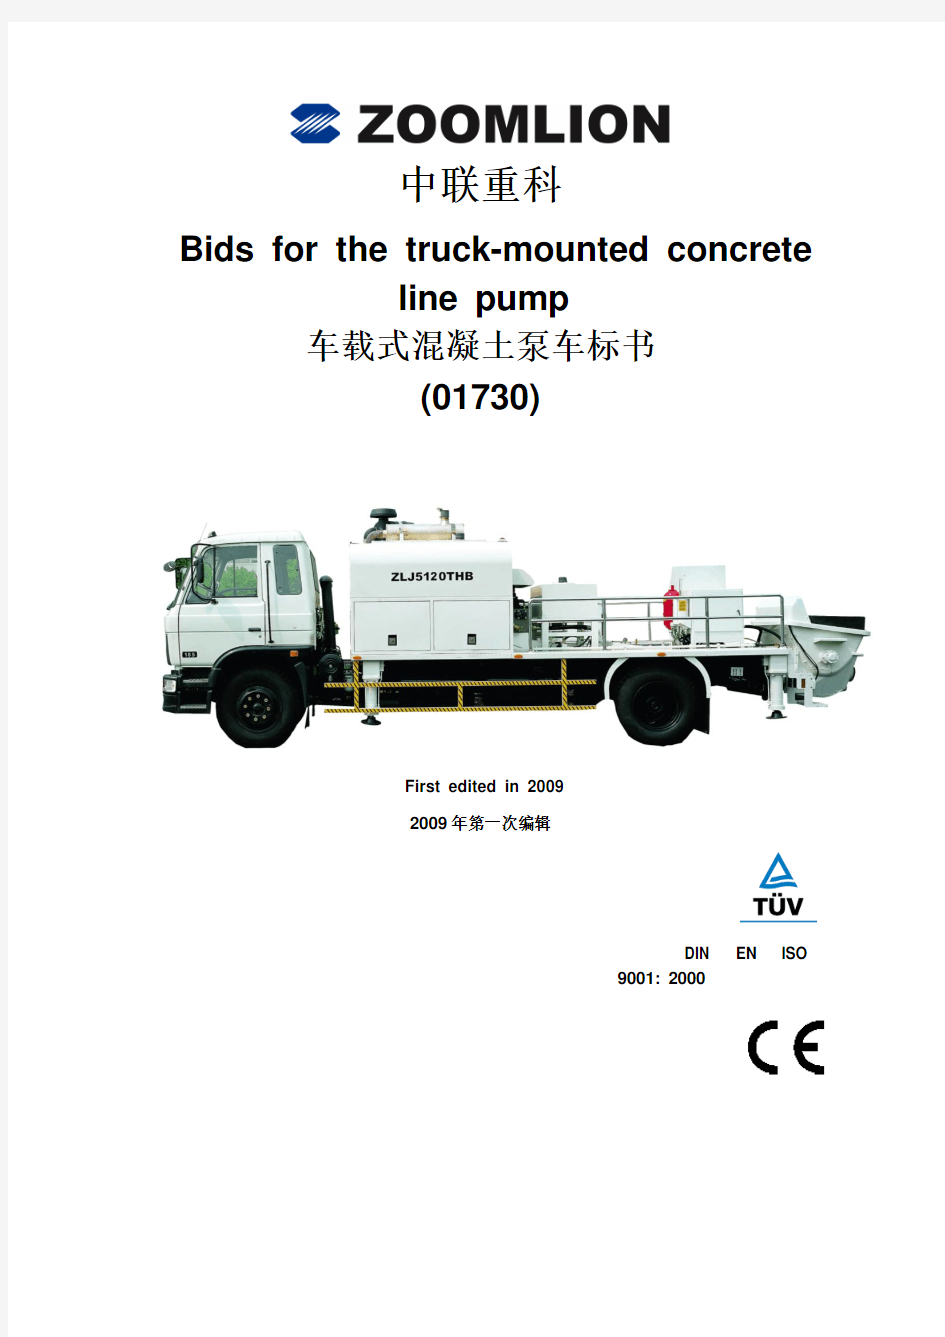 柴油机车载式混凝土泵车标书(01730)中英文